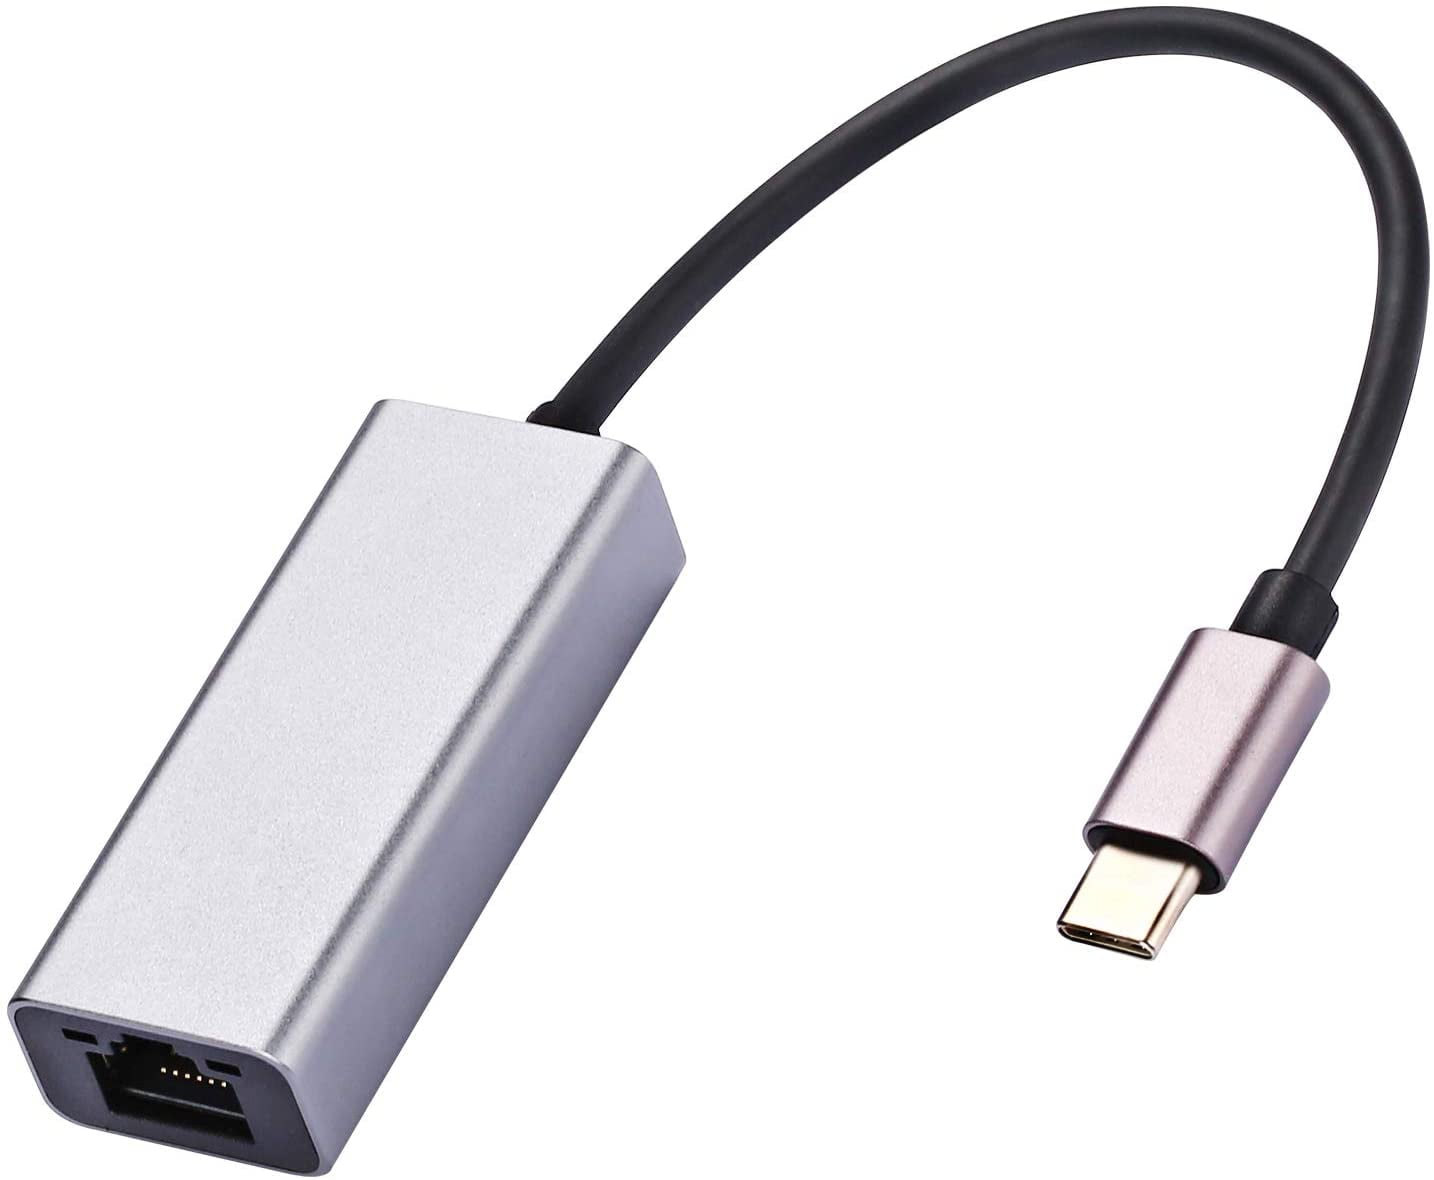 RJ45 Ethernet Netzwerkkabel Adapter für MacBook Pro Air Mac USB 2.0 zu LAN 